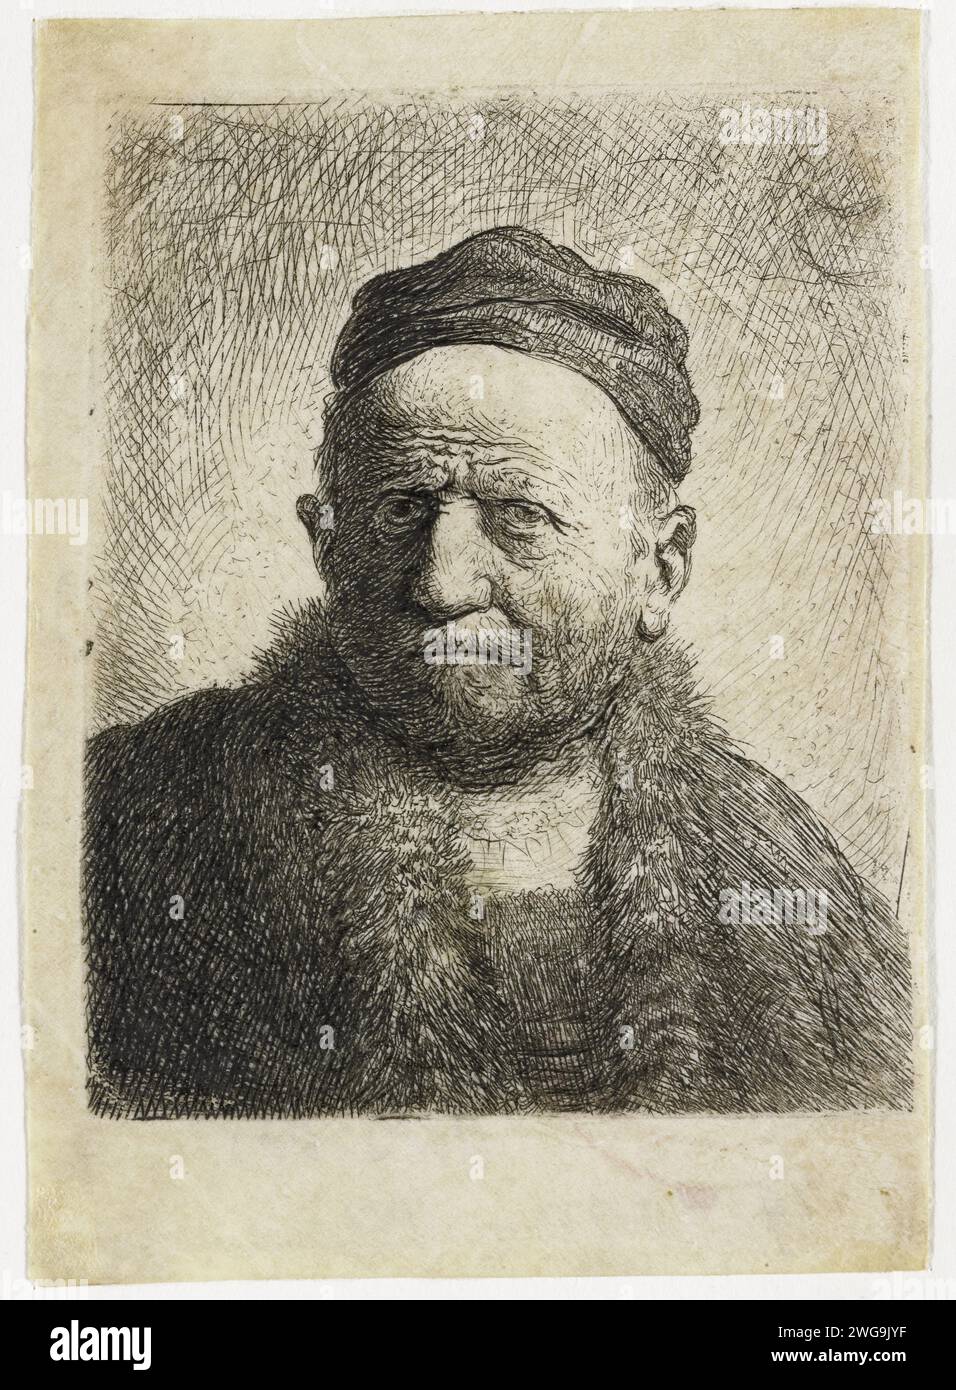 Homme portant une casquette fermée : buste (le père de l'artiste?), Rembrandt van Rijn, gravure en parchemin (matière animale) 1630 Banque D'Images